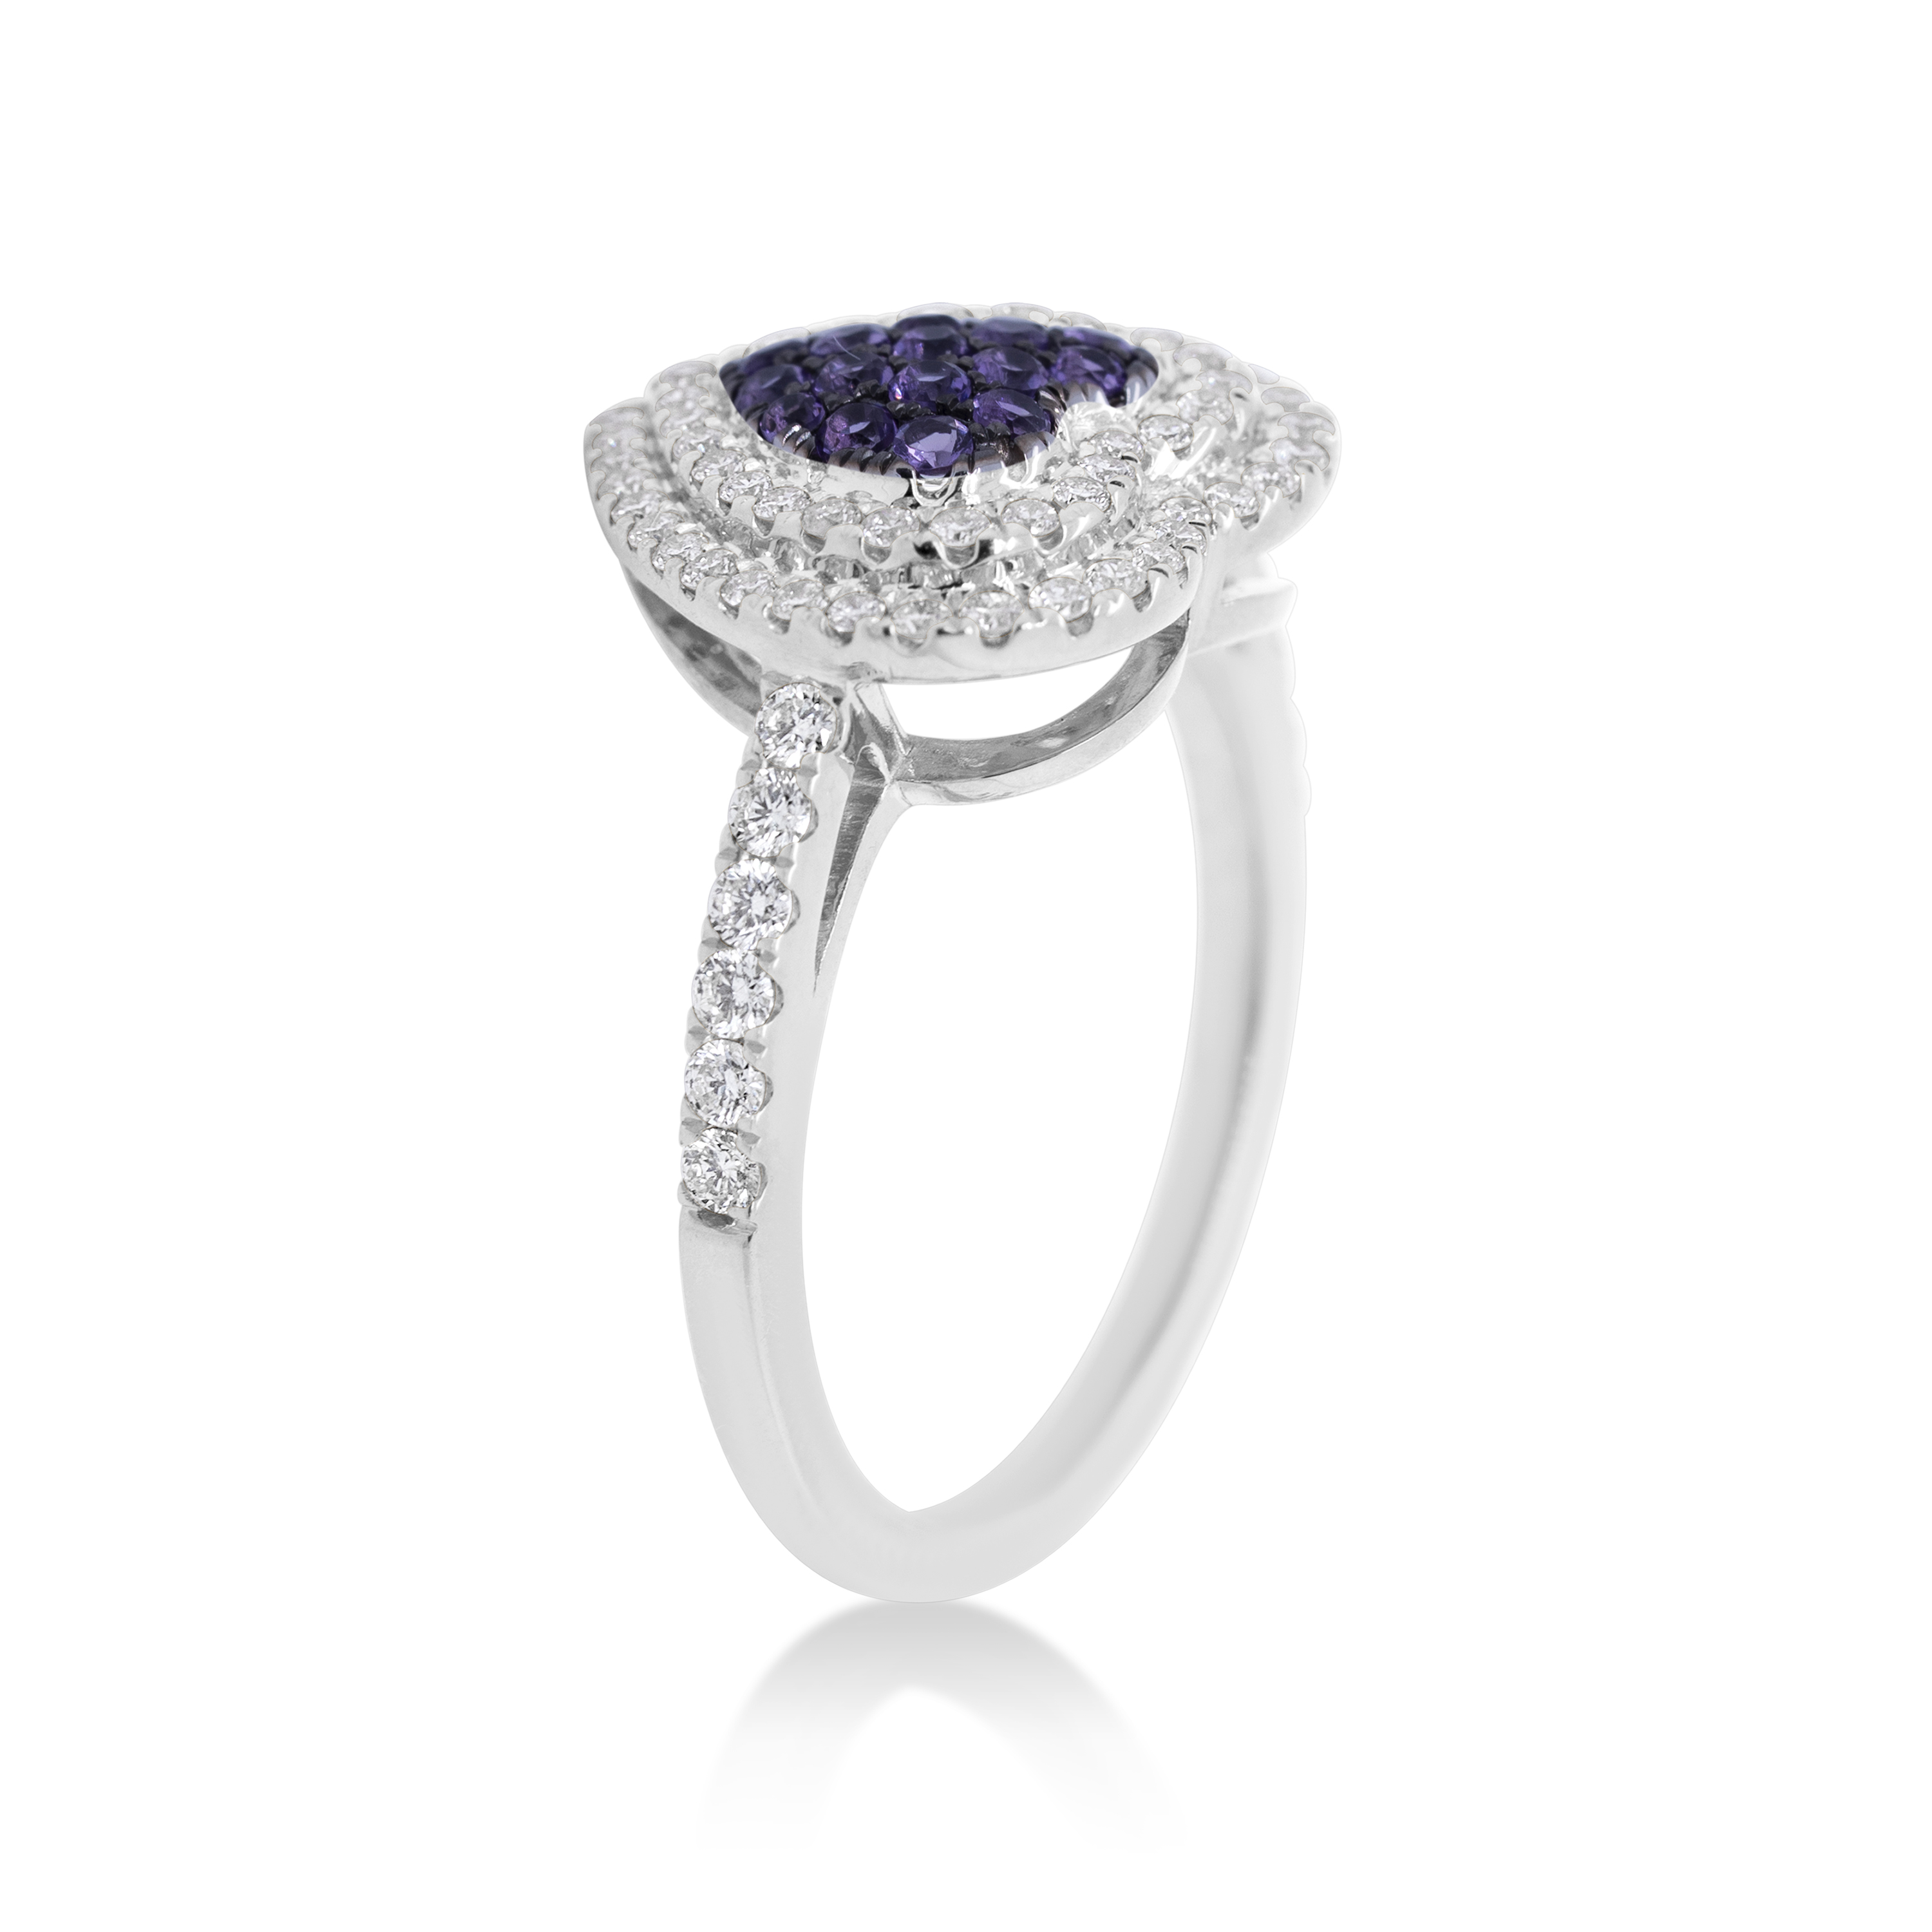 Diamond Heart Ring 0.44 ct. 14K White Gold 0.24 ct. Sapphire